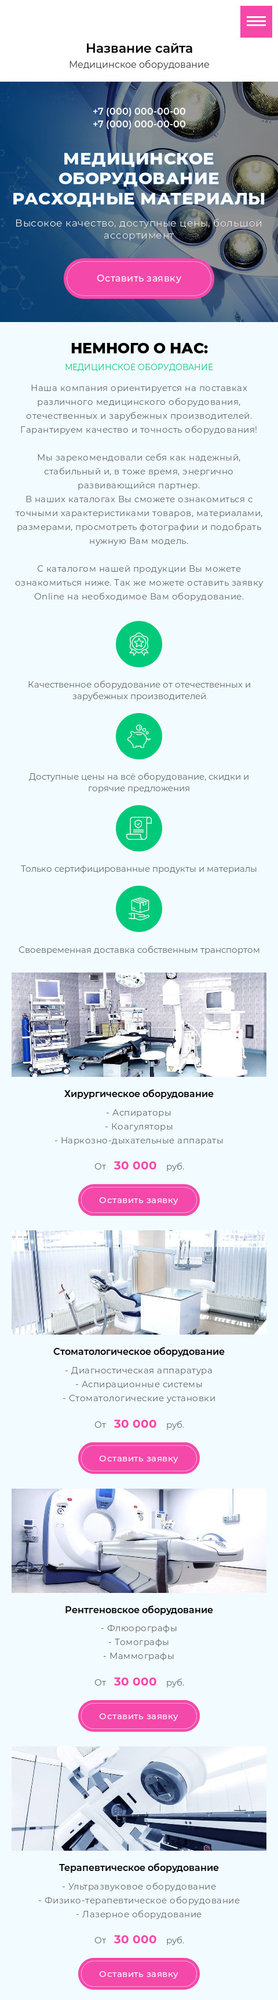 Готовый Сайт-Бизнес № 2567164 - Медицинское оборудование и расходные материалы (Мобильная версия)